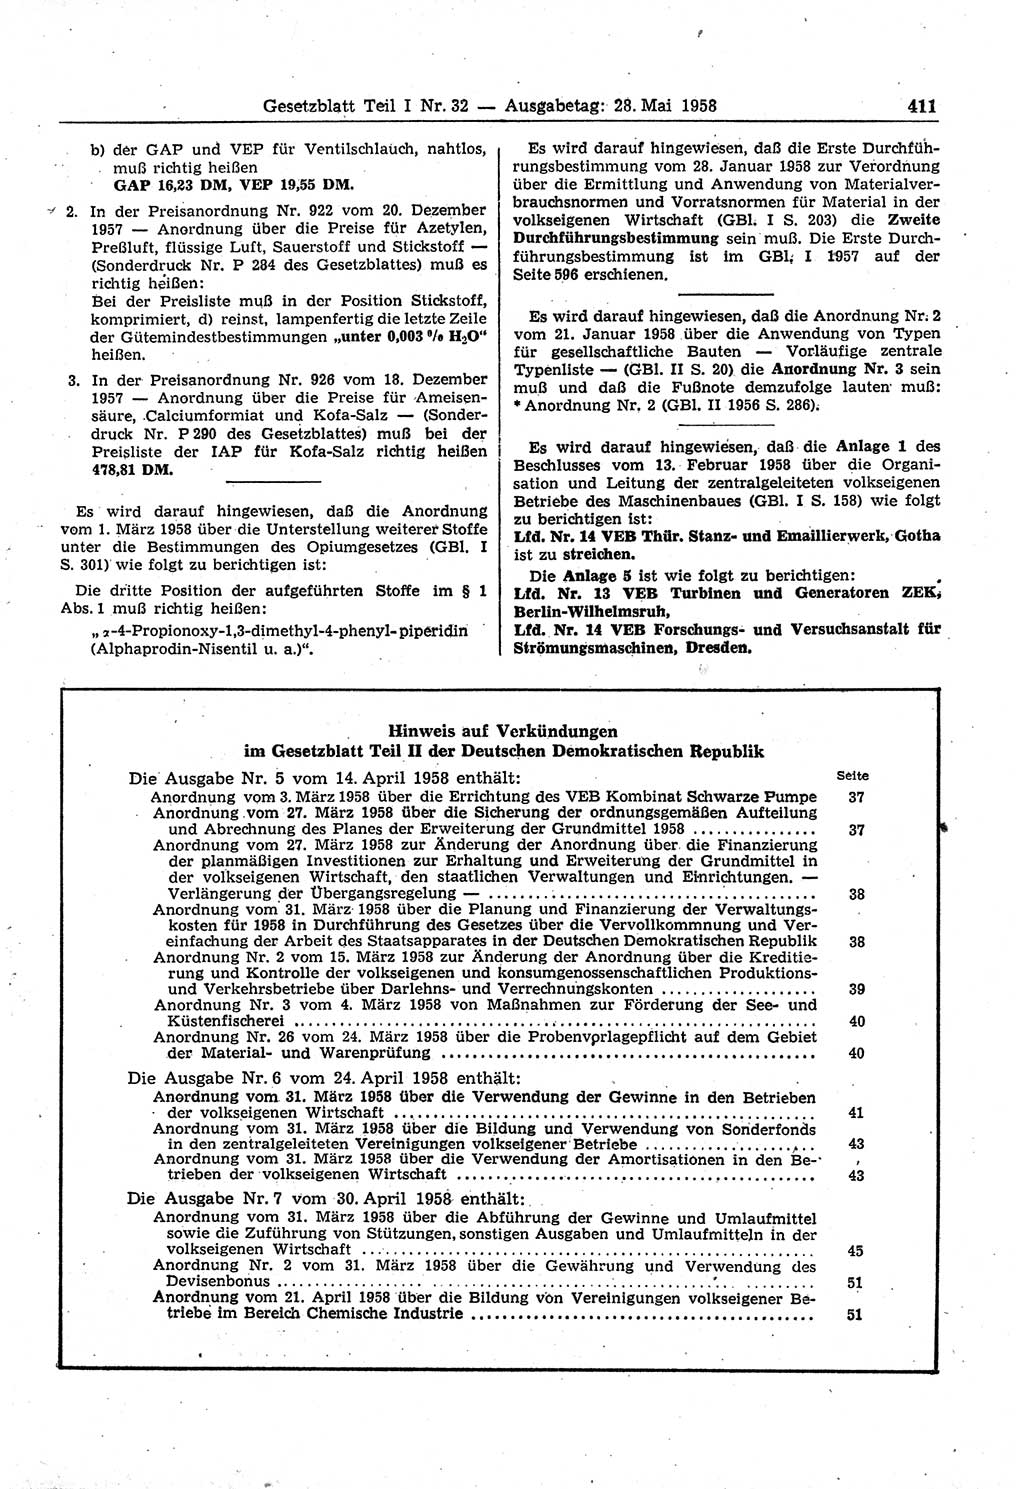 Gesetzblatt (GBl.) der Deutschen Demokratischen Republik (DDR) Teil Ⅰ 1958, Seite 411 (GBl. DDR Ⅰ 1958, S. 411)